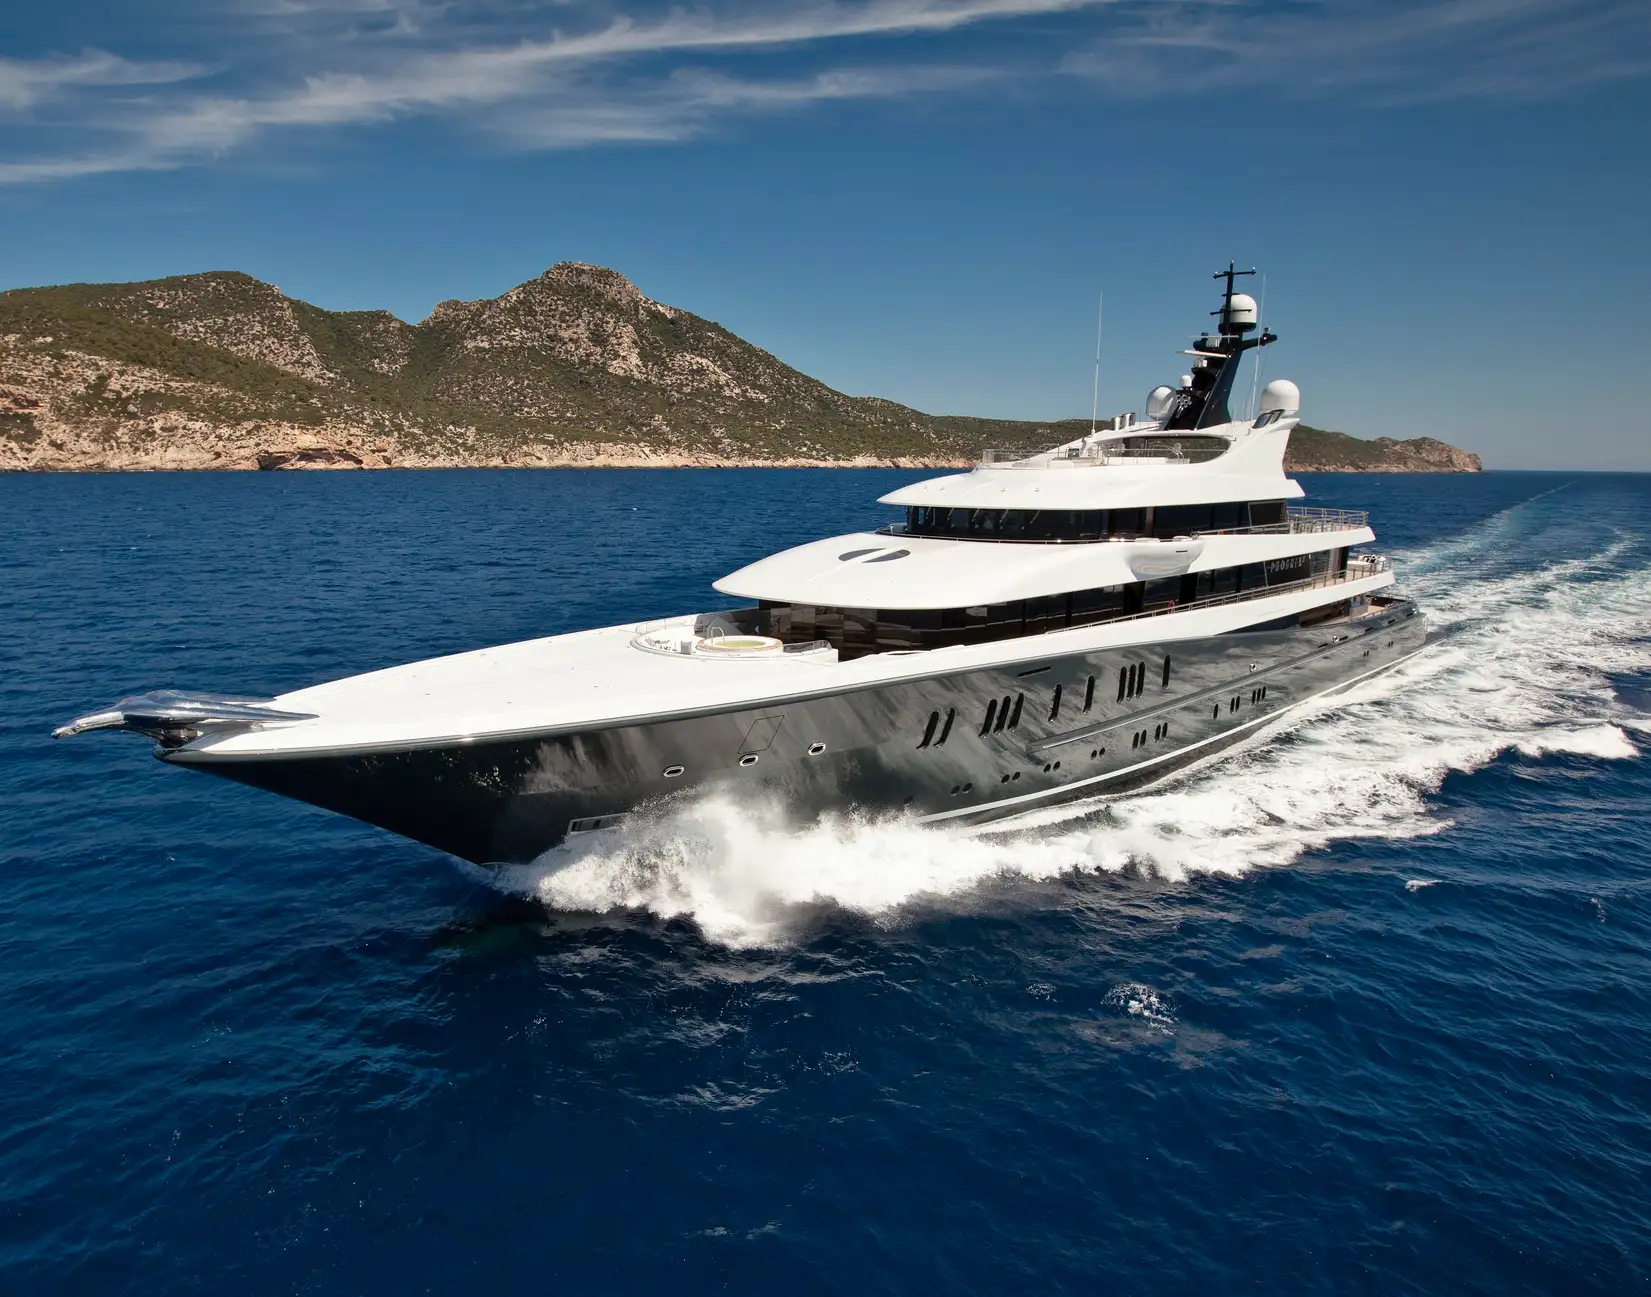 buy luxury yacht